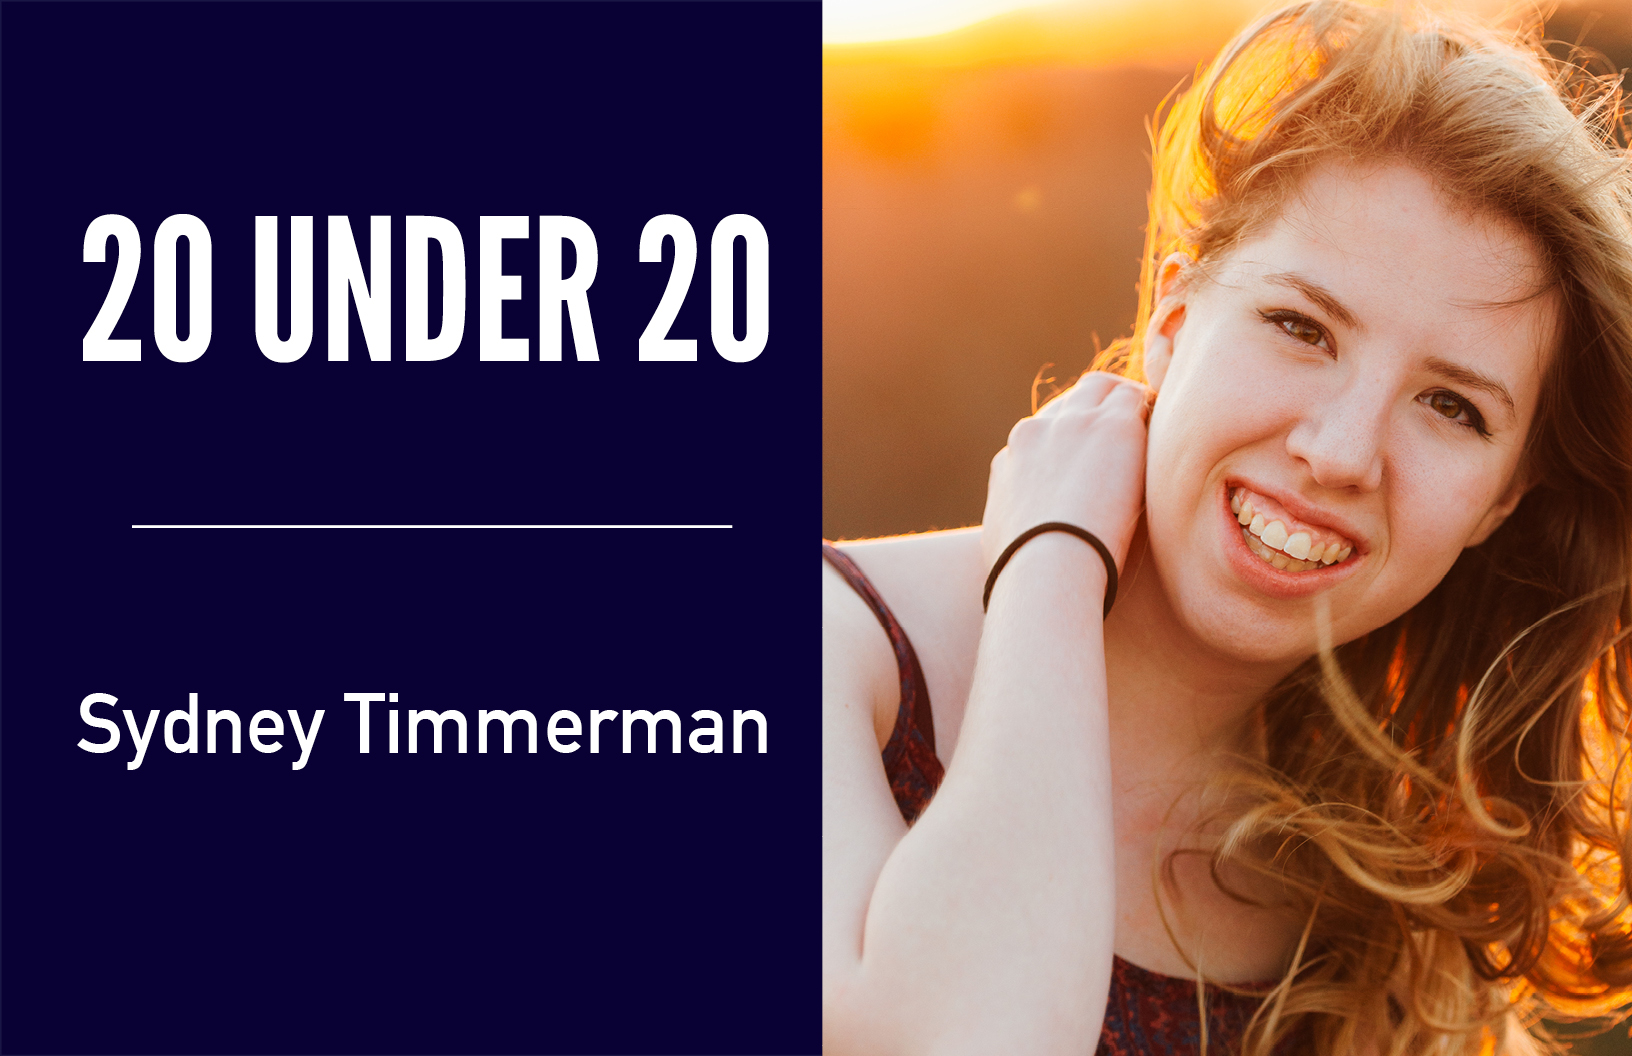 Sydney-Timmerman-20-under-20